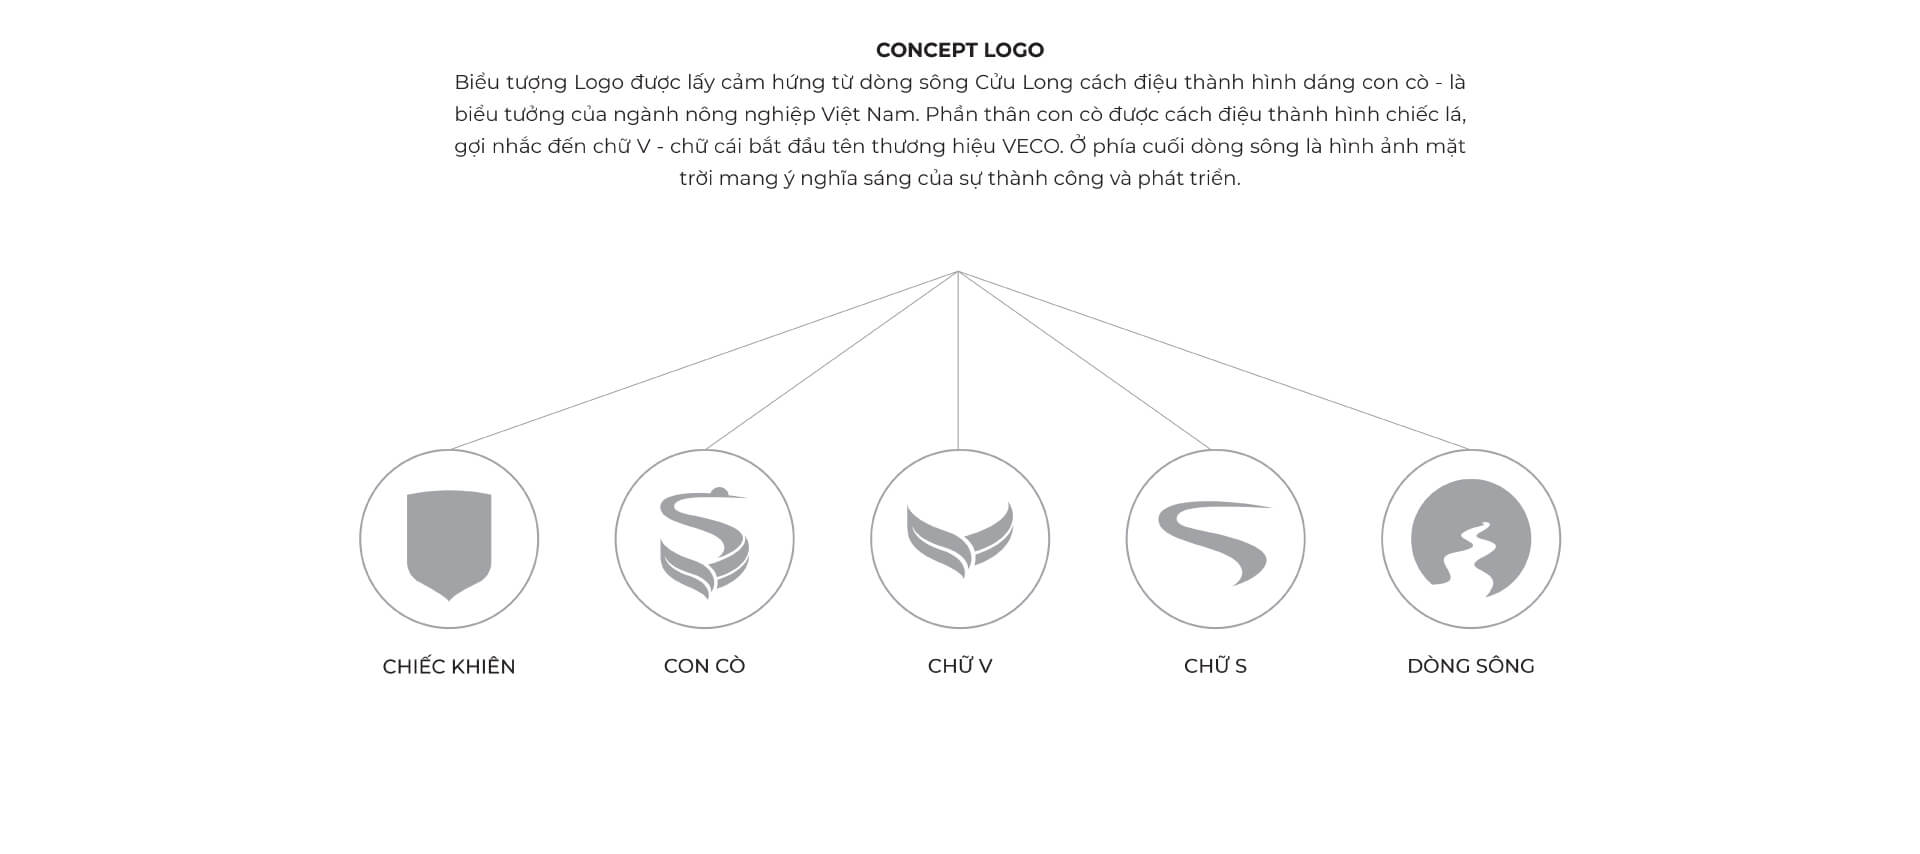 Dự án thiết kế bộ nhận diện thương hiệu, thiết kế logo VECO của Sao Kim Branding - 2 - 2